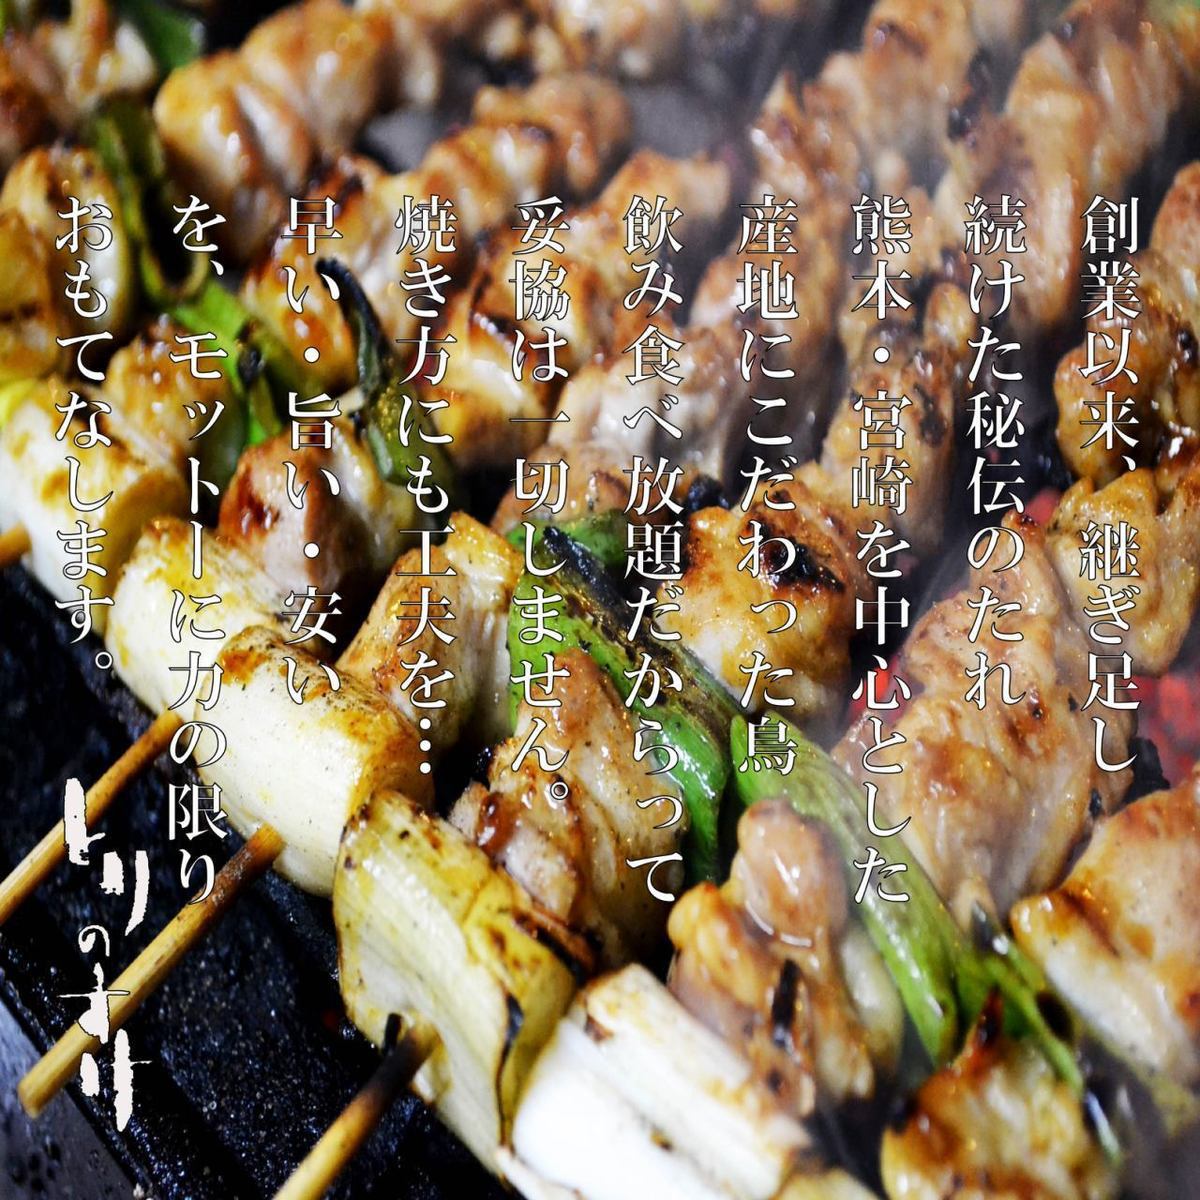 烤鸡肉串吃到饱！套餐3,600日元起♪我们对食物的品质充满信心！